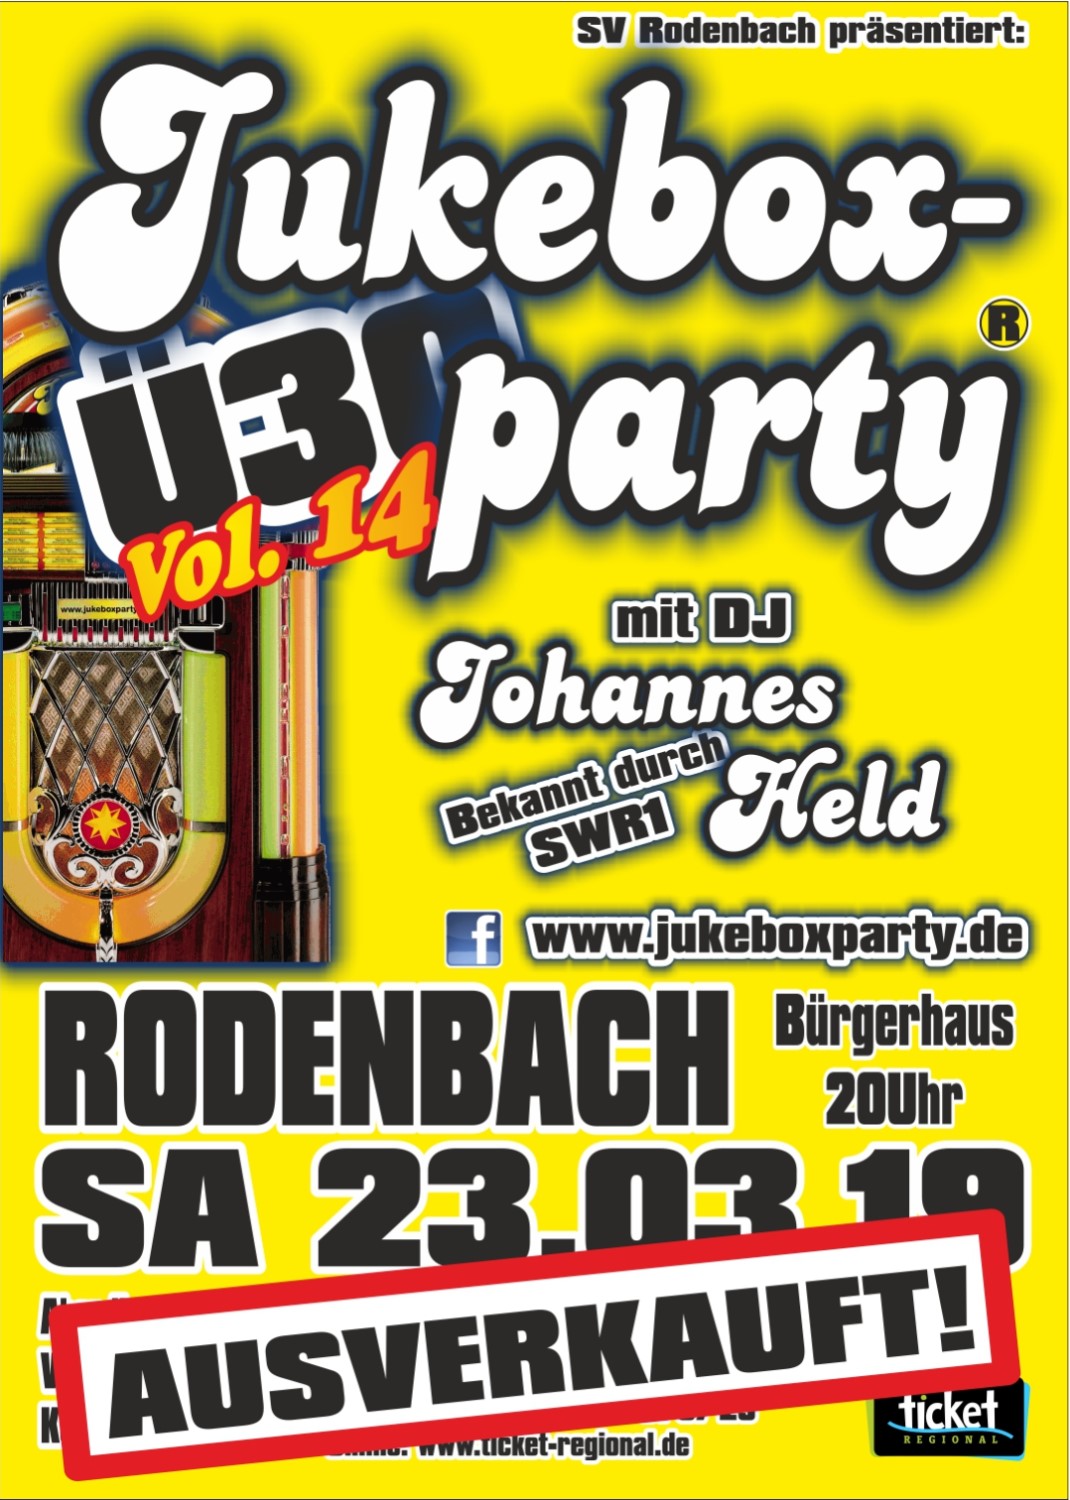 www.jukeboxparty.de